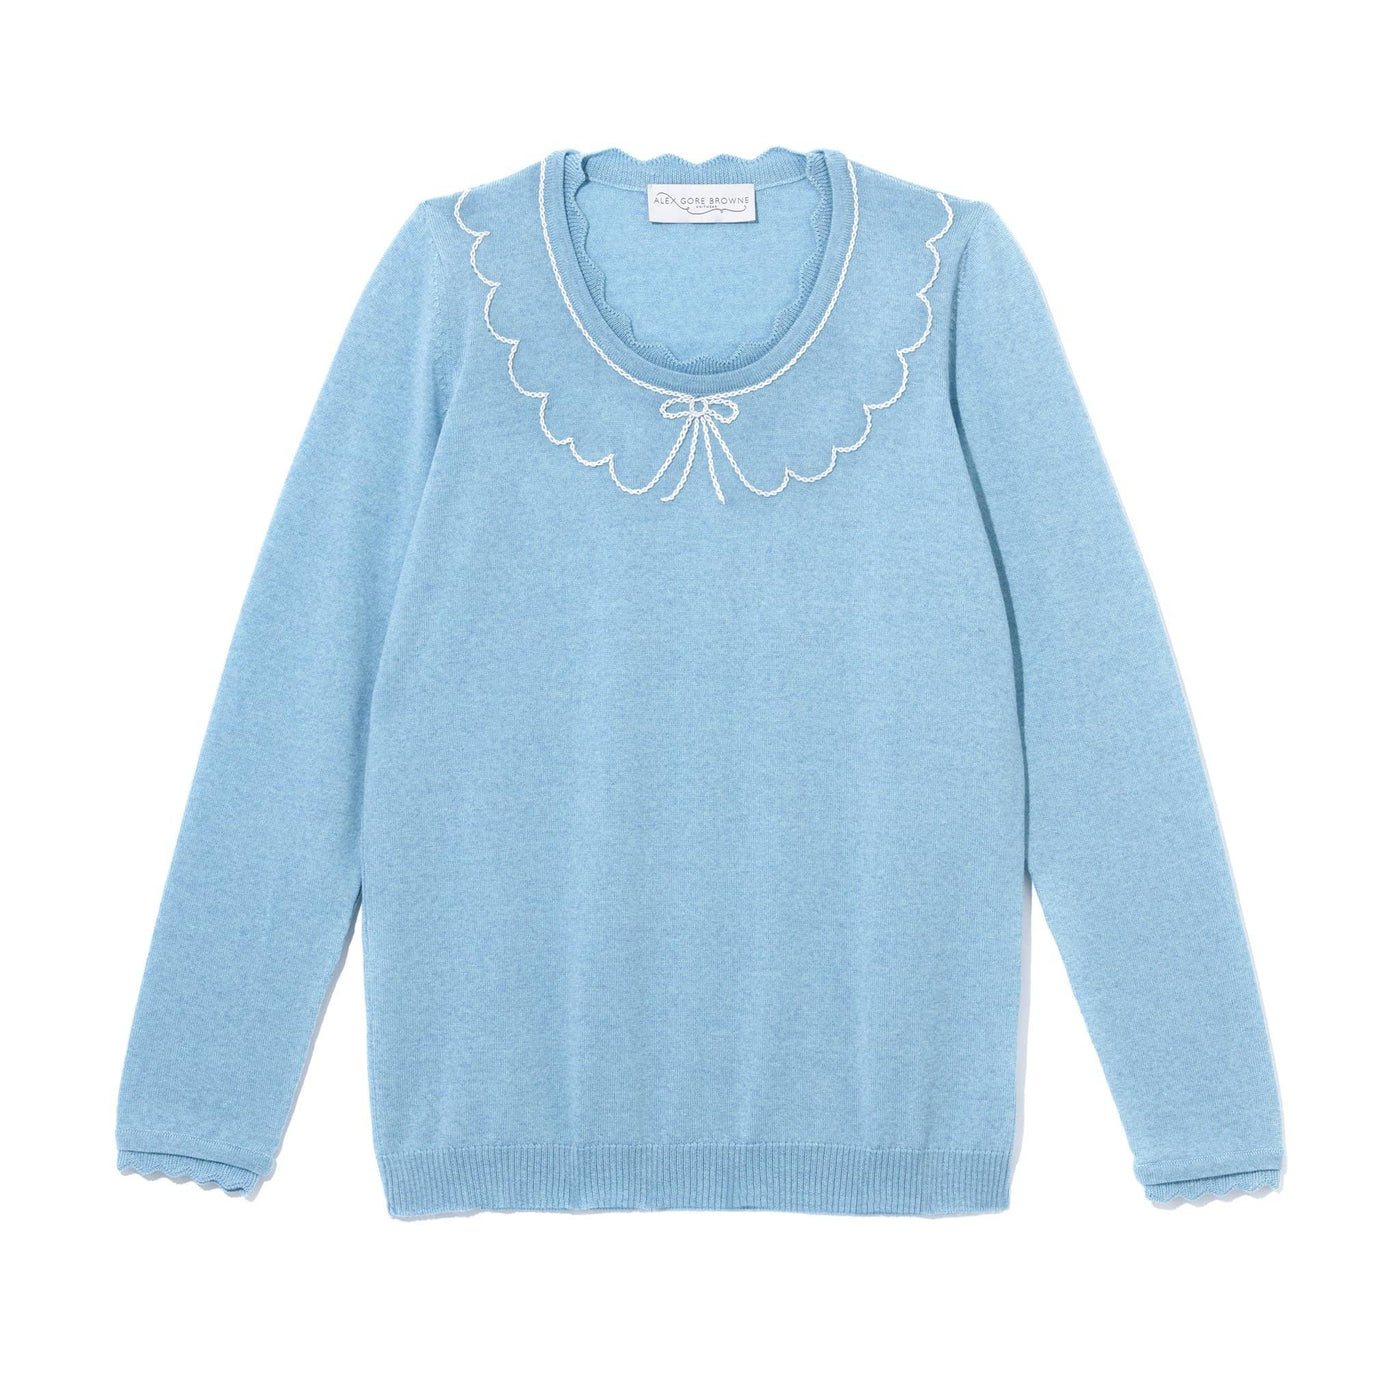 Peter Pan Collar Sweater - Light Blue